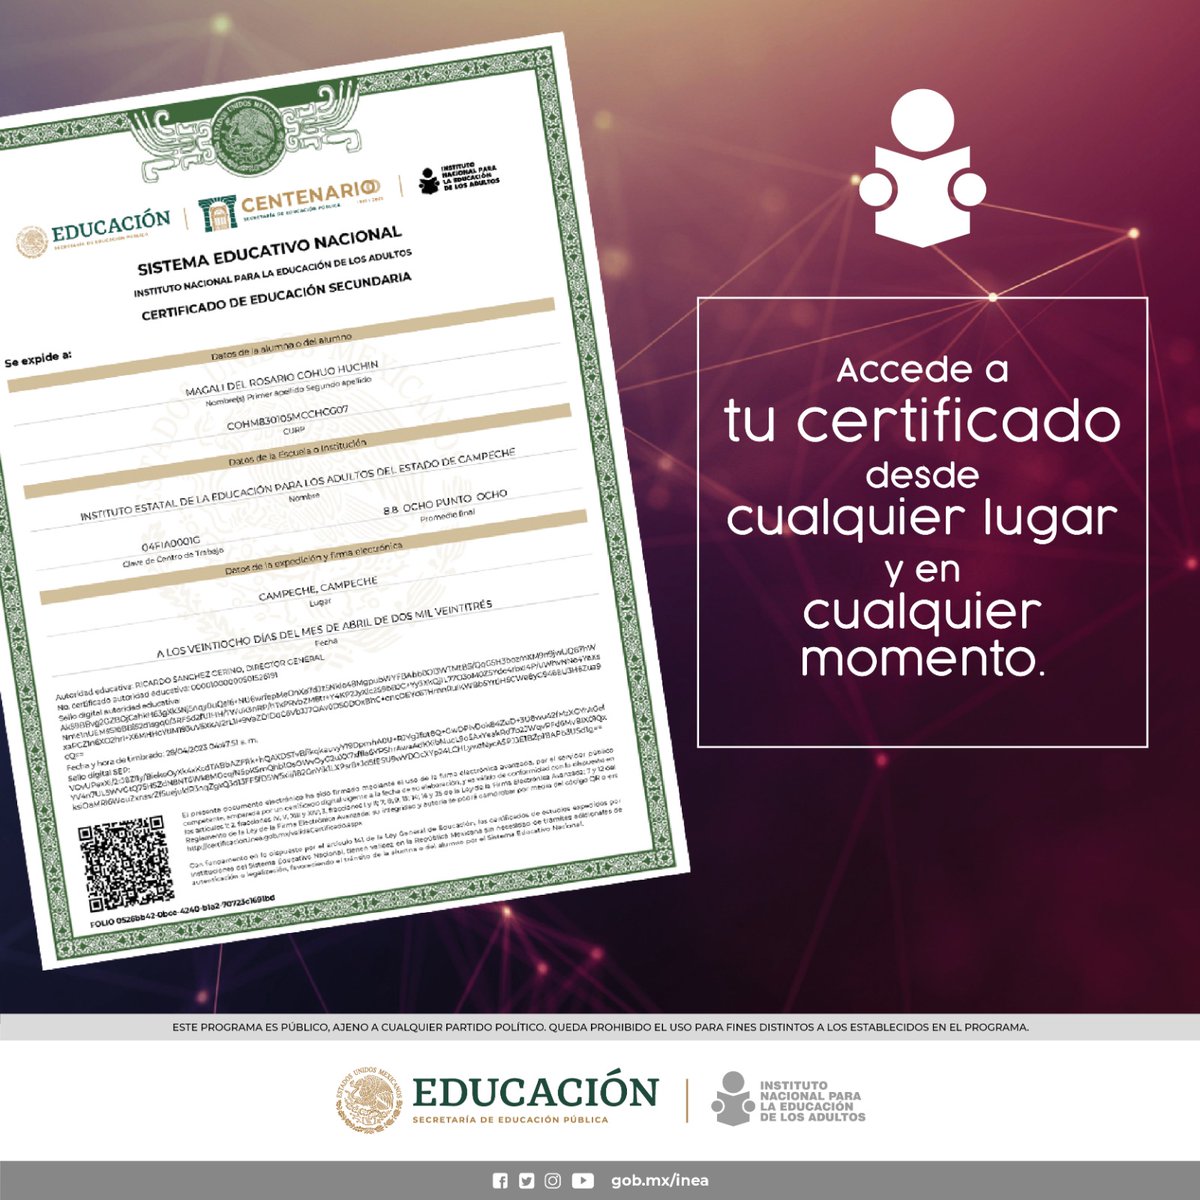 🟡¿Sabías que el #INEA ofrece certificados digitales de primaria y secundaria a través del Sistema de Certificado Digital (SICEDI)? ¡Sí, es cierto! 📌Estos certificados tienen validez oficial y puedes imprimirlos las veces que necesites aquí ➡️ bit.ly/3Lrey8E